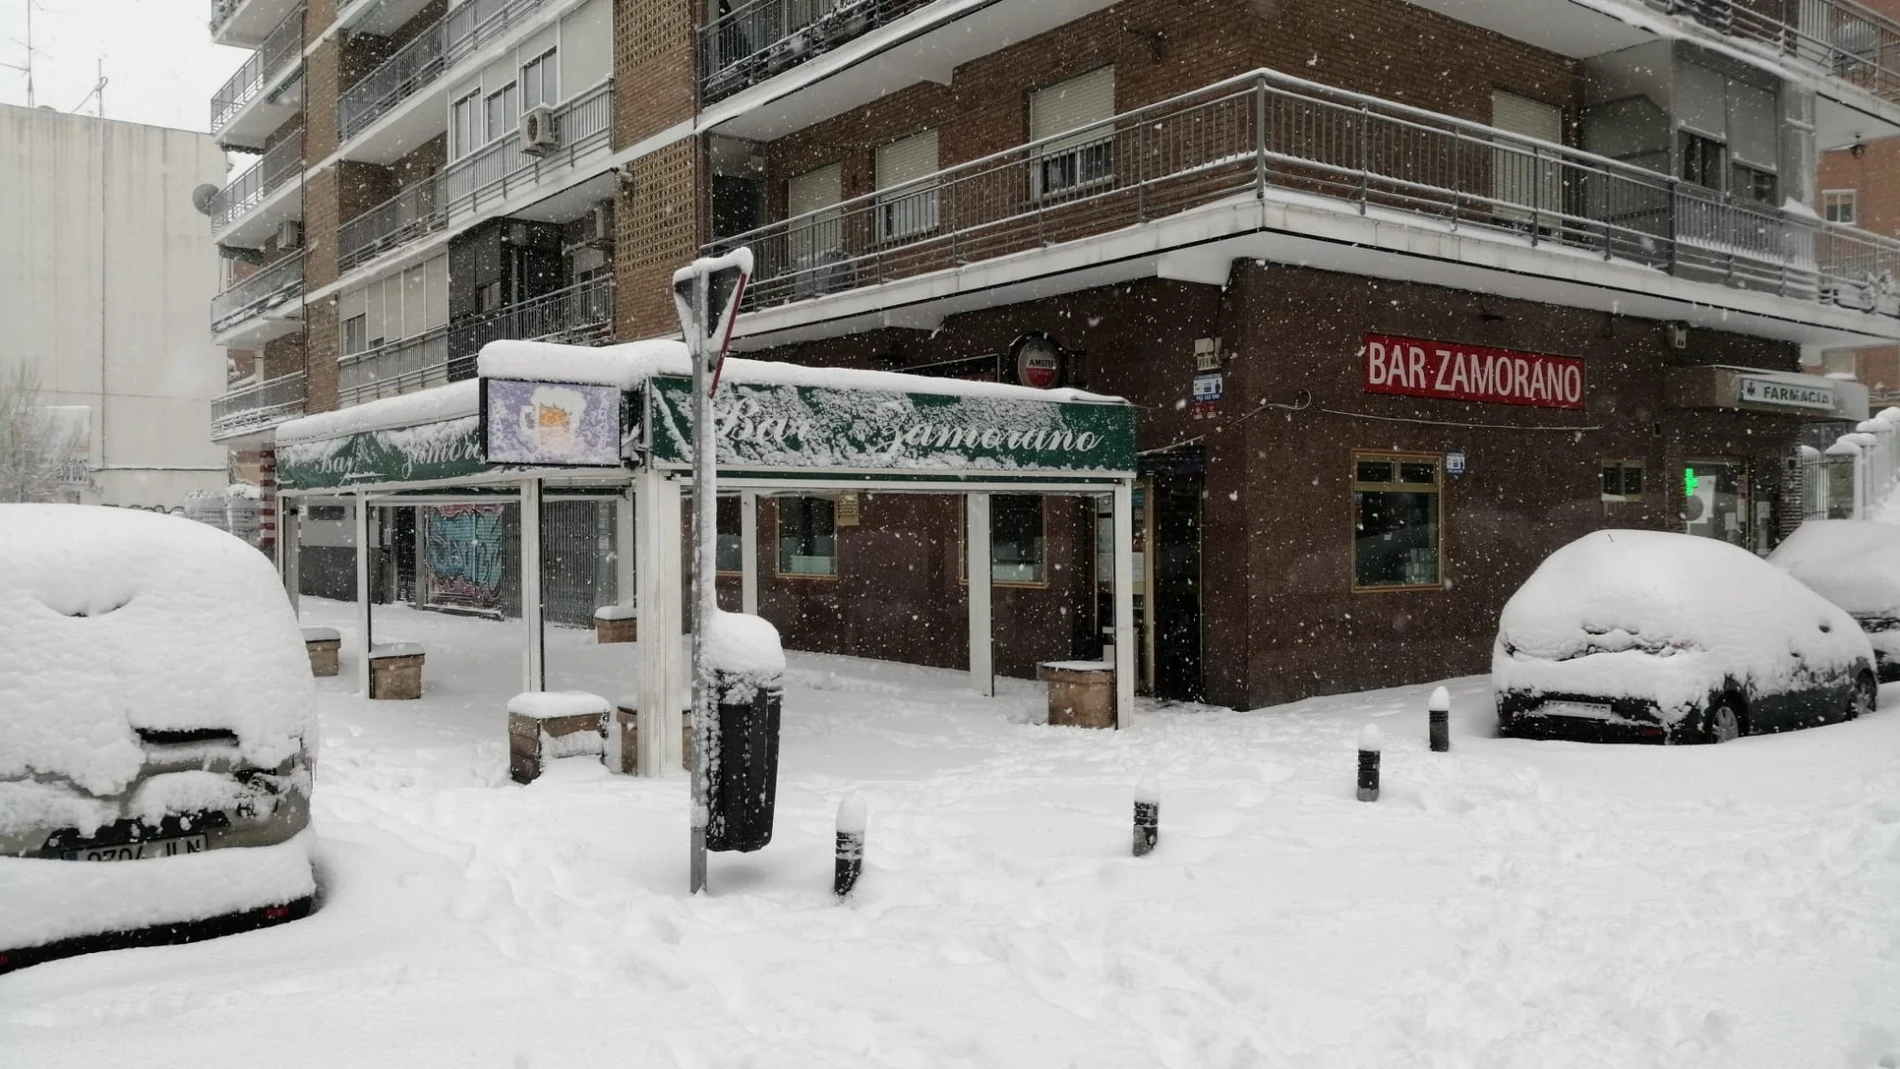 La nieve remató las economías de comerciantes y hosteleros en plena crisis pandémica